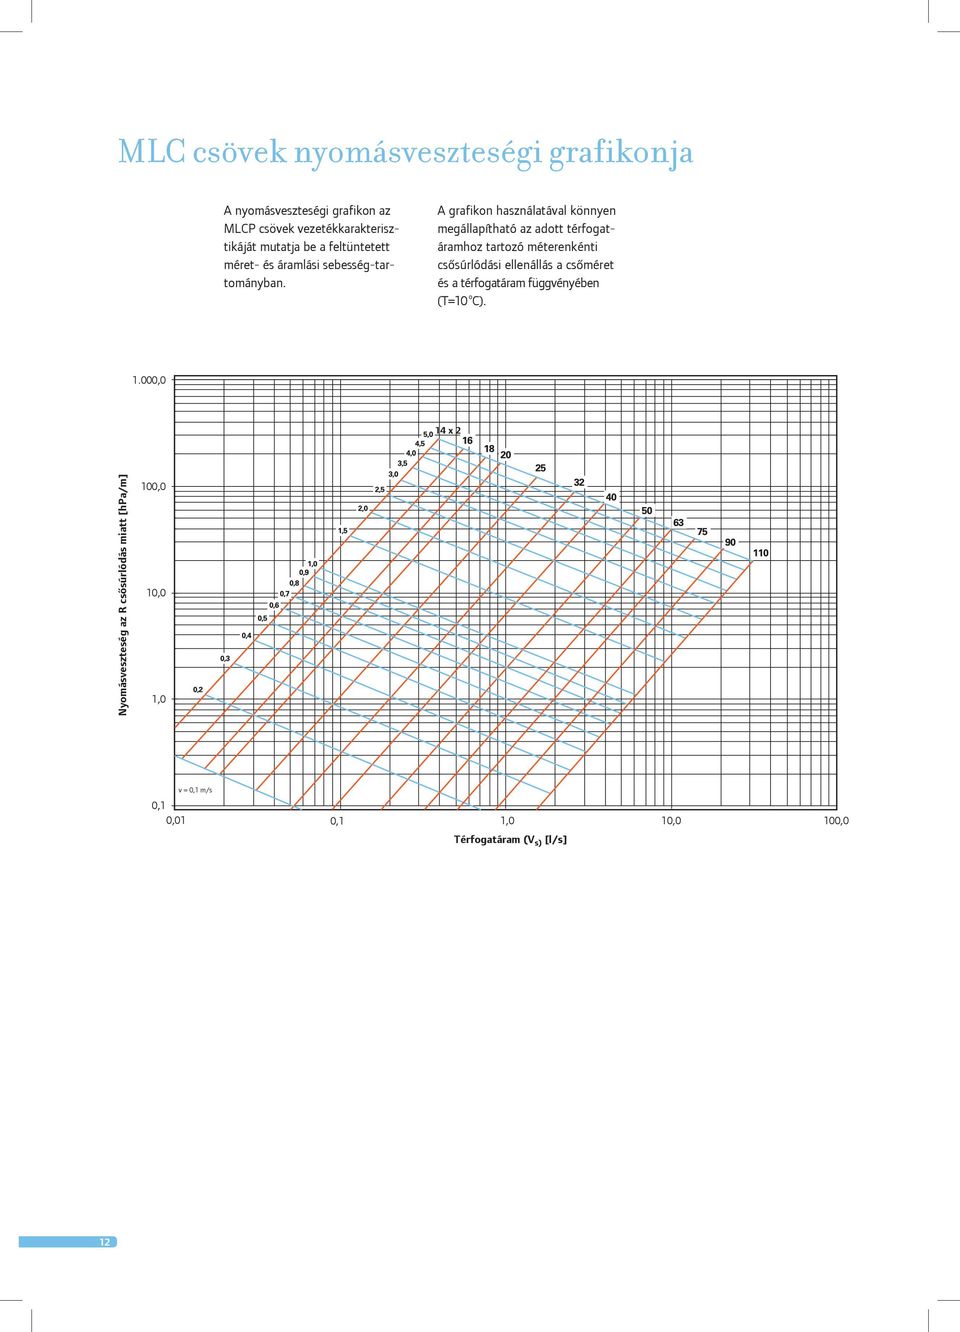 A grafikon használatával könnyen megállapítható az adott térfogatáramhoz tartozó méterenkénti csôsúrlódási ellenállás a